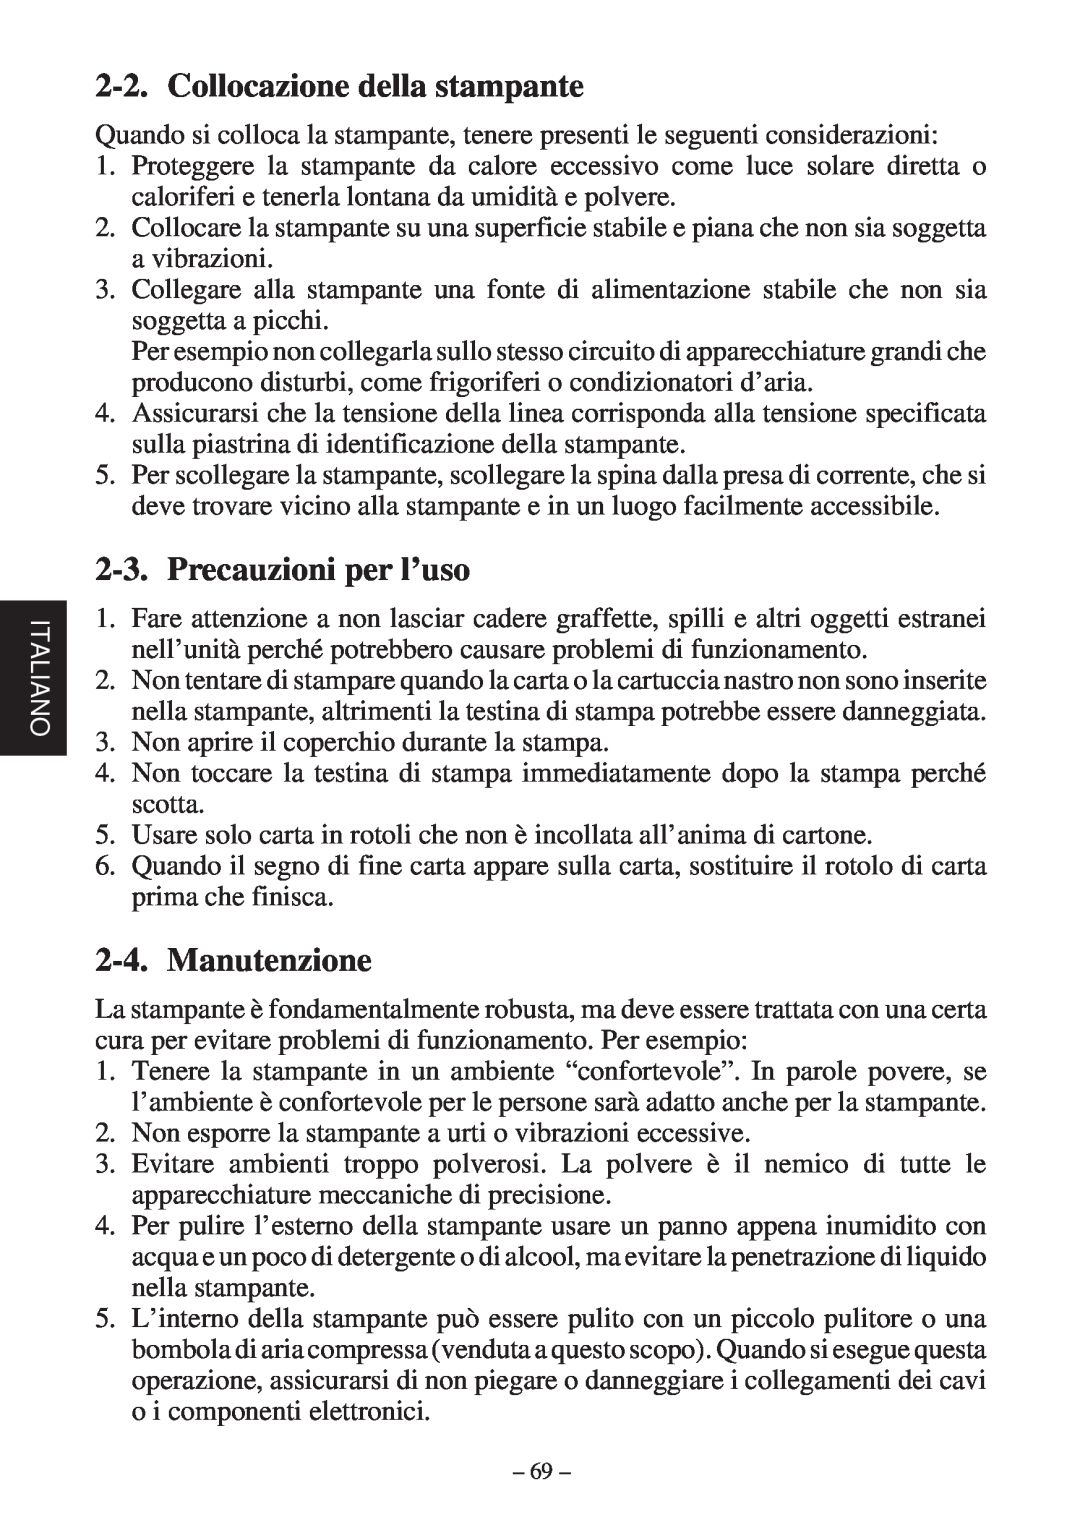 Star Micronics SP200F user manual Collocazione della stampante, Precauzioni per l’uso, Manutenzione 